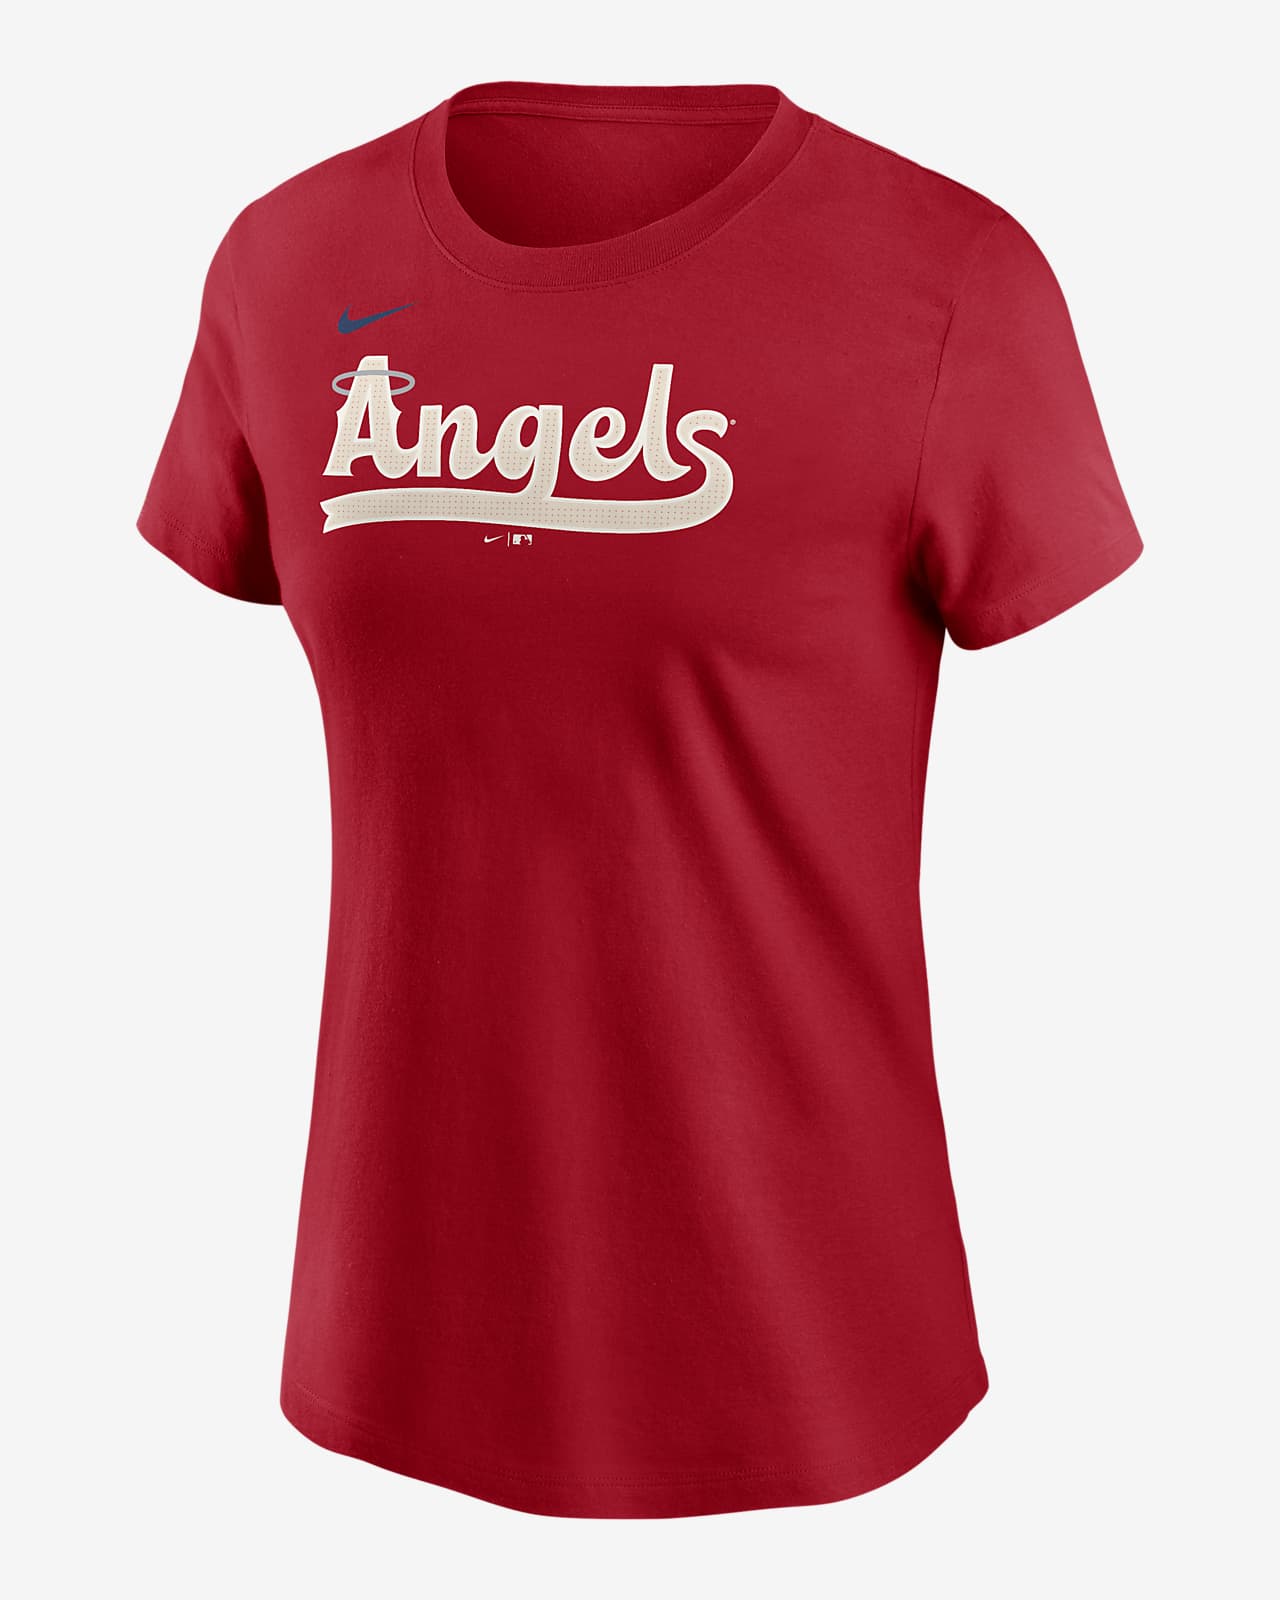 Playera Nike de la MLB para mujer Los Angeles Angels City Connect Wordmark